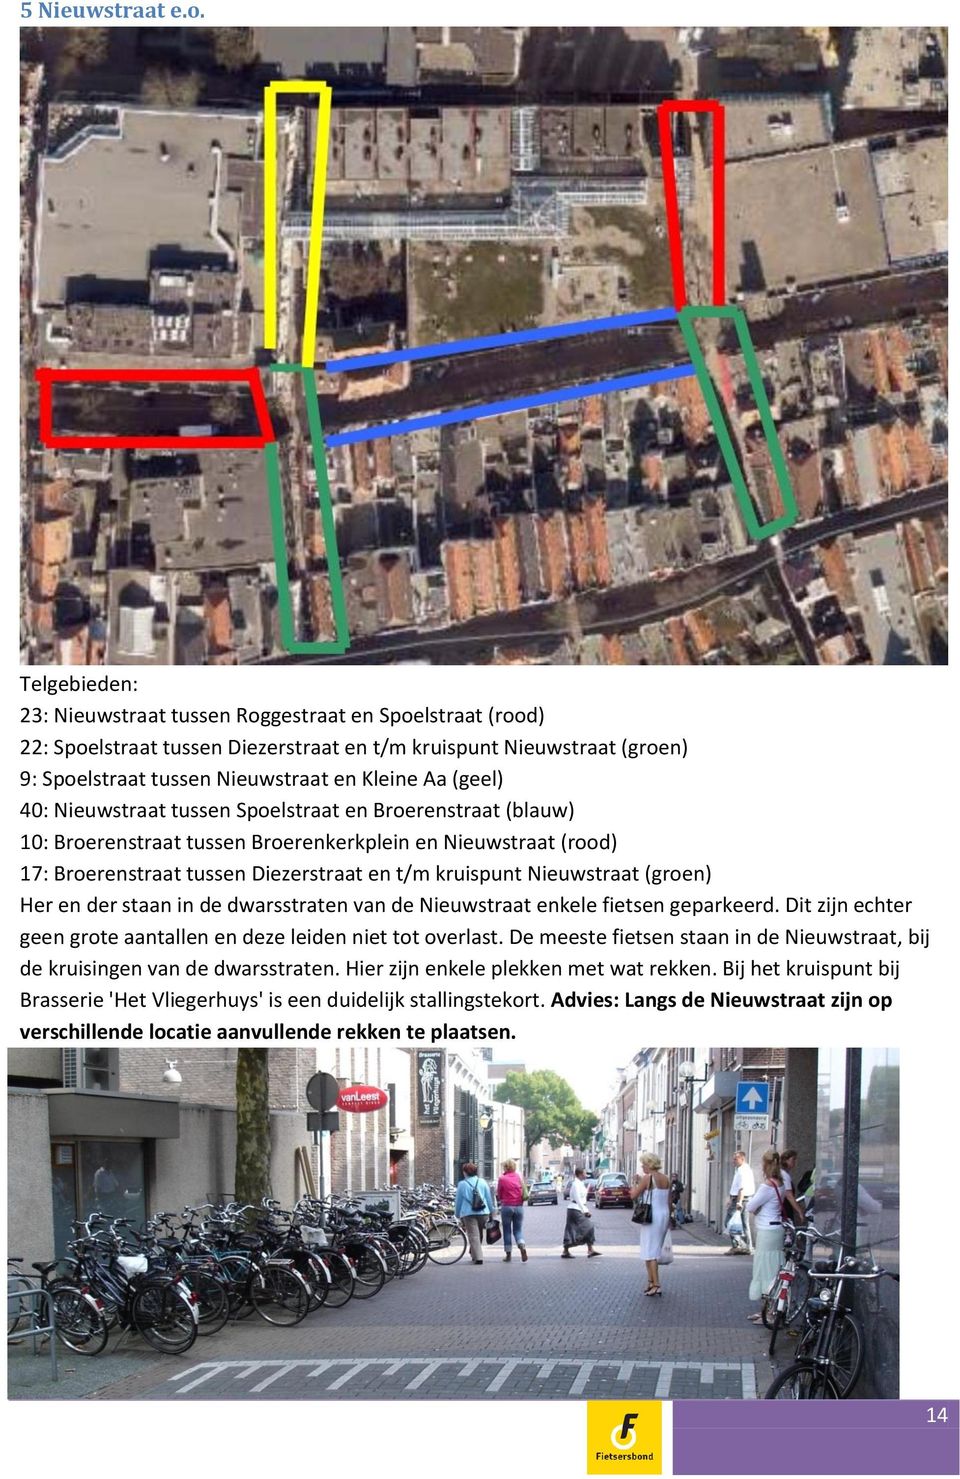 40: Nieuwstraat tussen Spoelstraat en Broerenstraat (blauw) 10: Broerenstraat tussen Broerenkerkplein en Nieuwstraat (rood) 17: Broerenstraat tussen Diezerstraat en t/m kruispunt Nieuwstraat (groen)